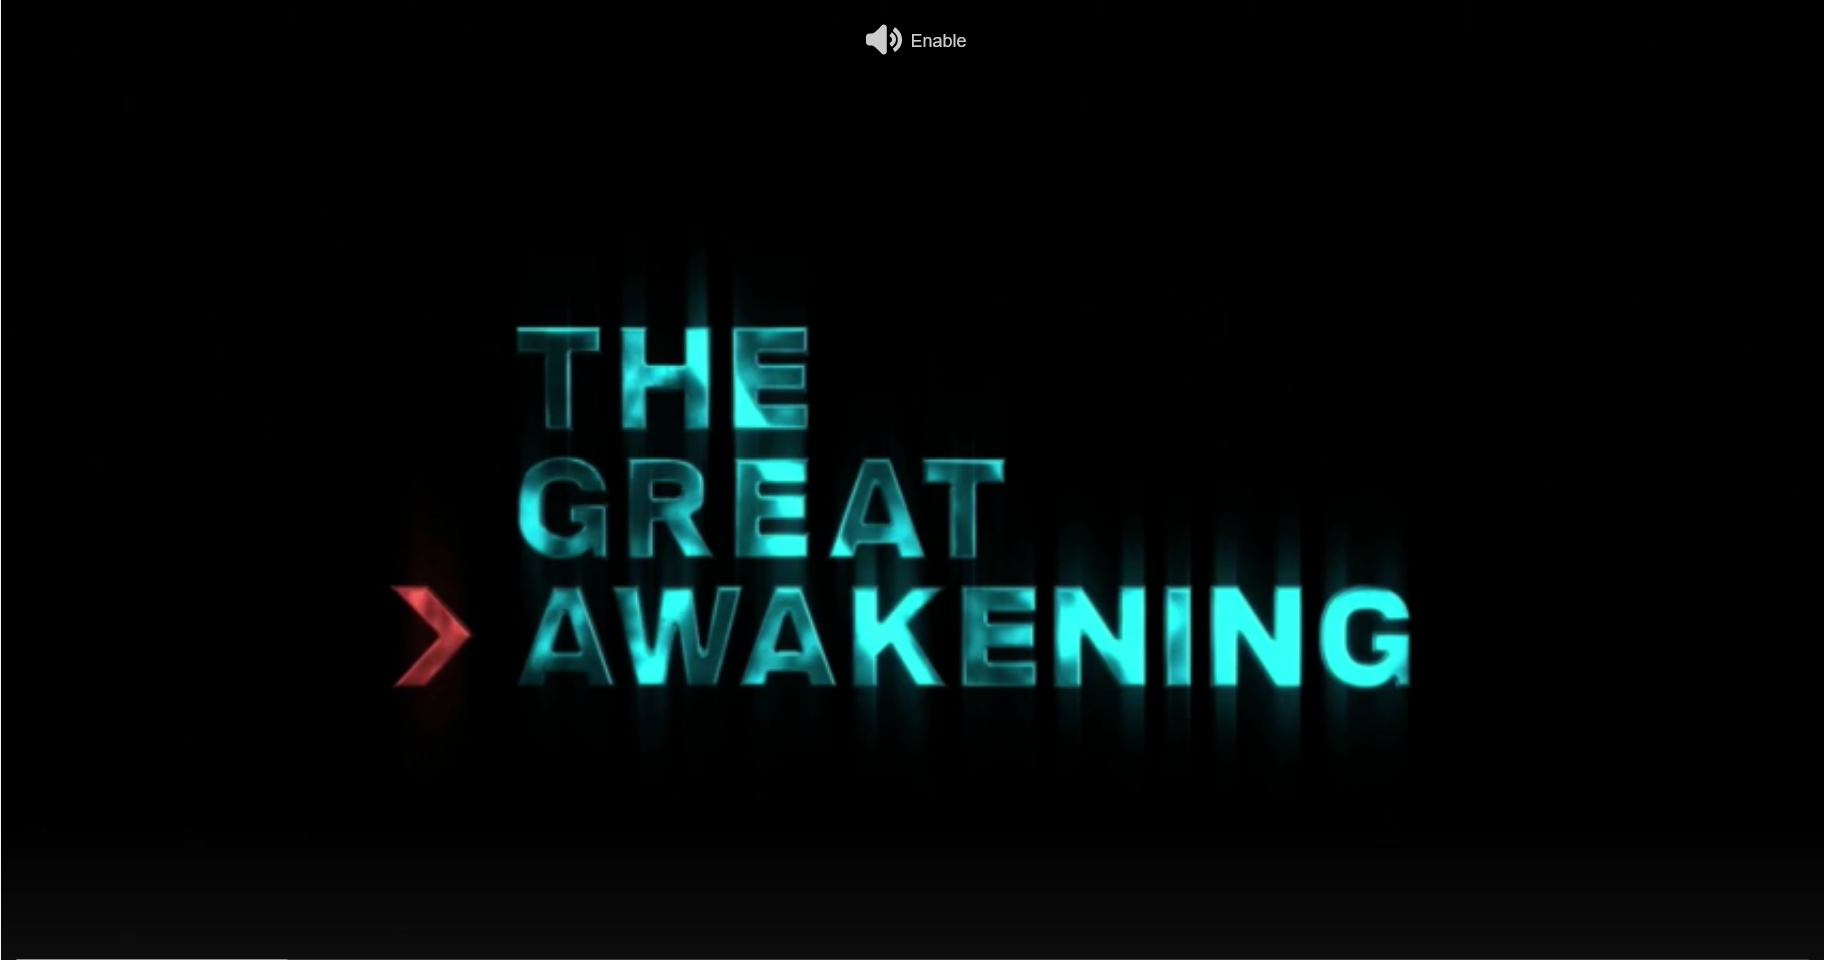 great awakening screening godpeak.png